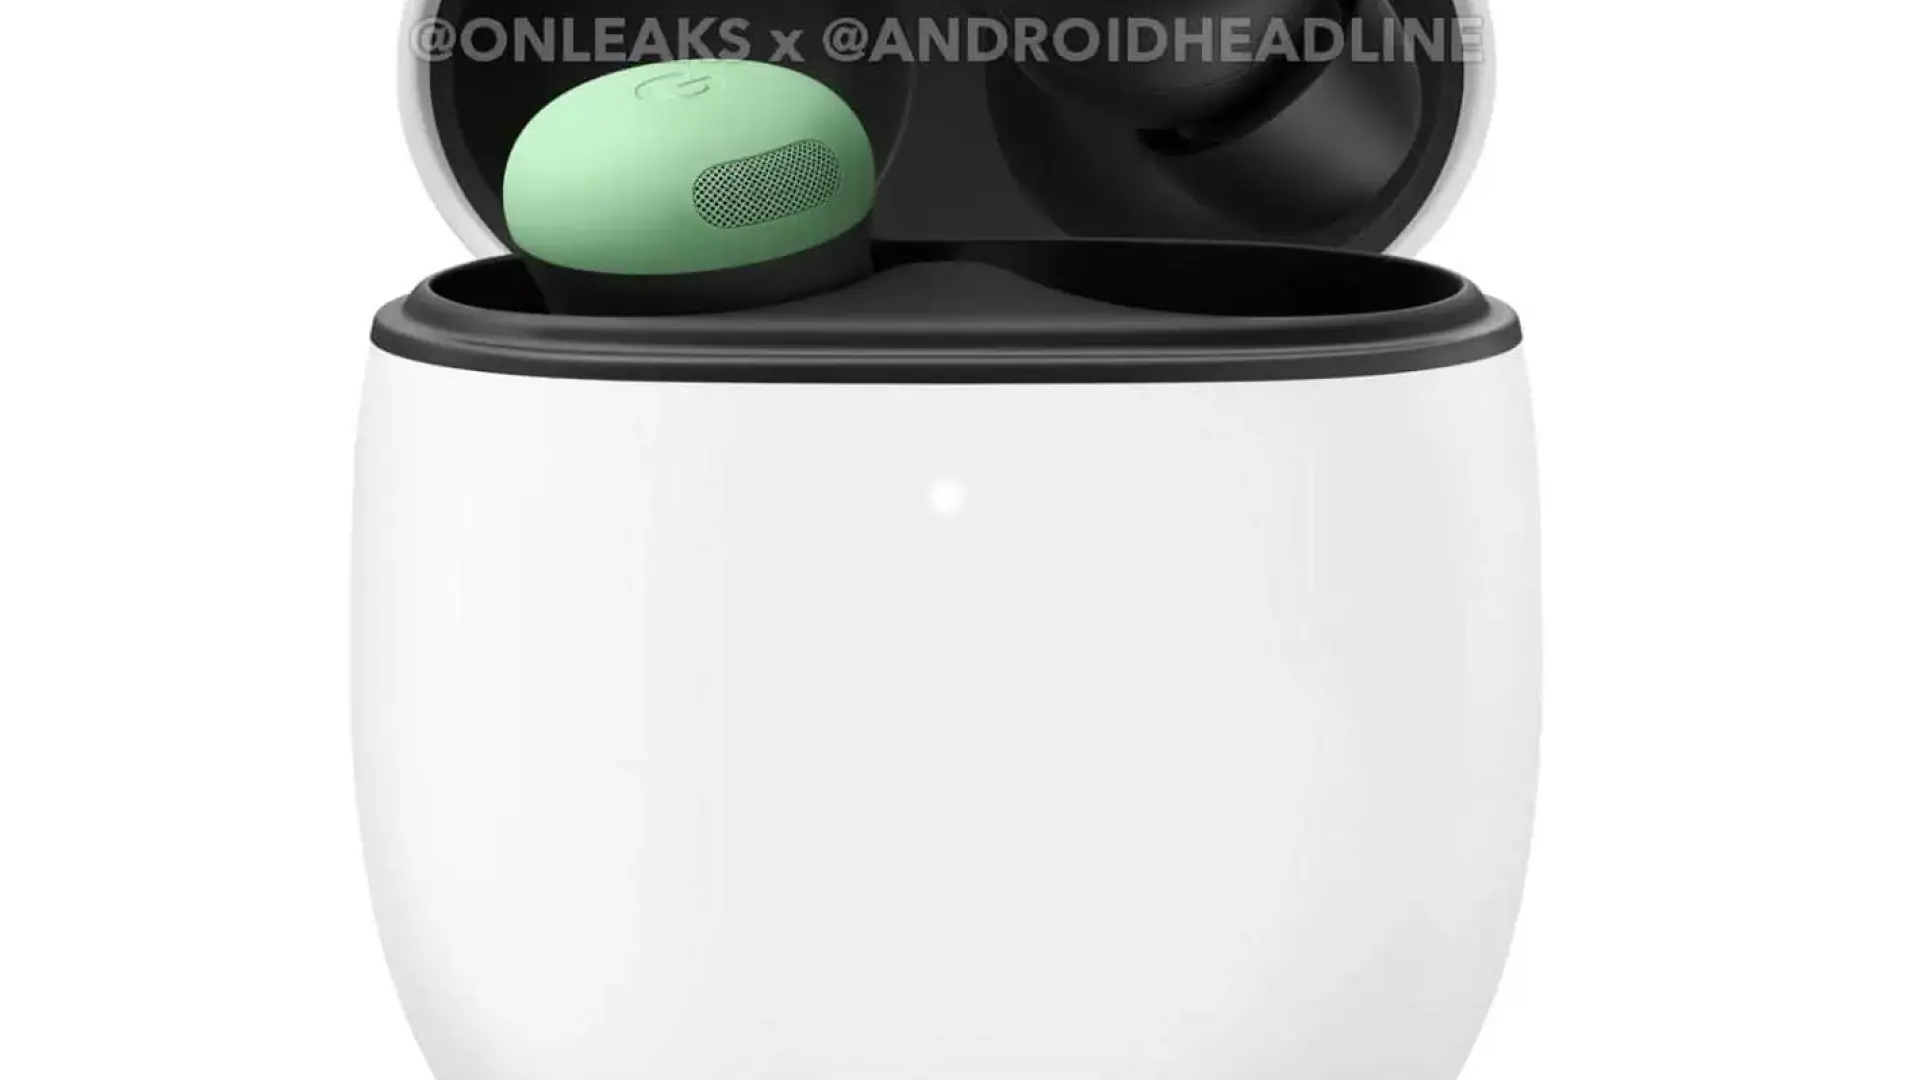 Filtran imágenes de los nuevos Pixel Pro 2, los auriculares de Google que quieren desmarcarse de los AirPods